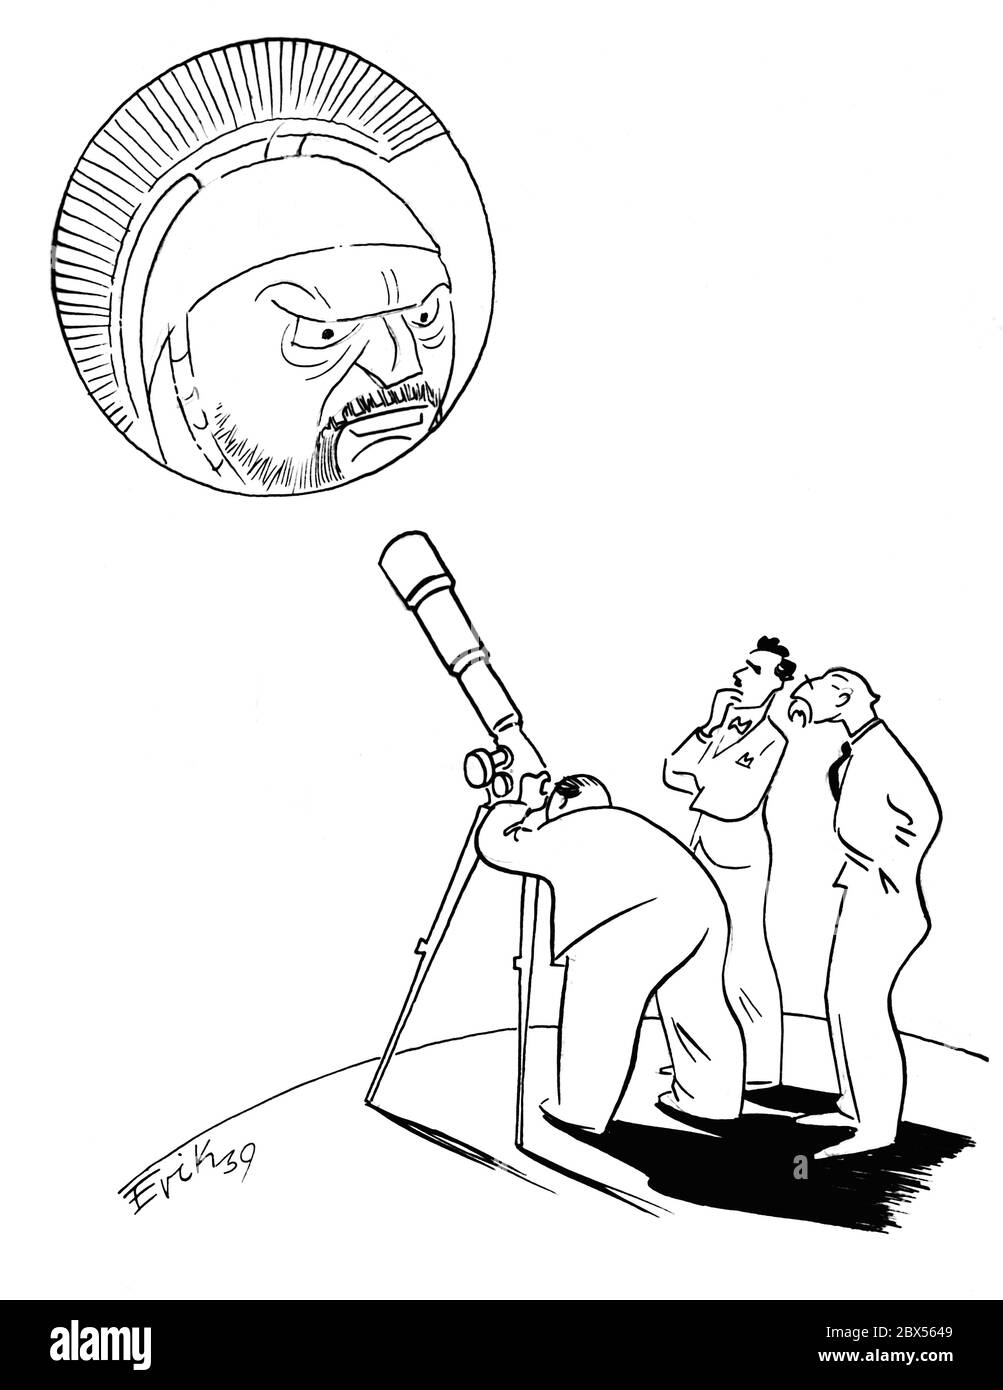 Eine Karikatur von Erik zeigt drei Menschen, darunter Winston Churchill und Anthony Eden, die den Planeten Mars durch ein Teleskop betrachten: "Schade, dass wir ihn nicht noch näher bringen können!" Stockfoto